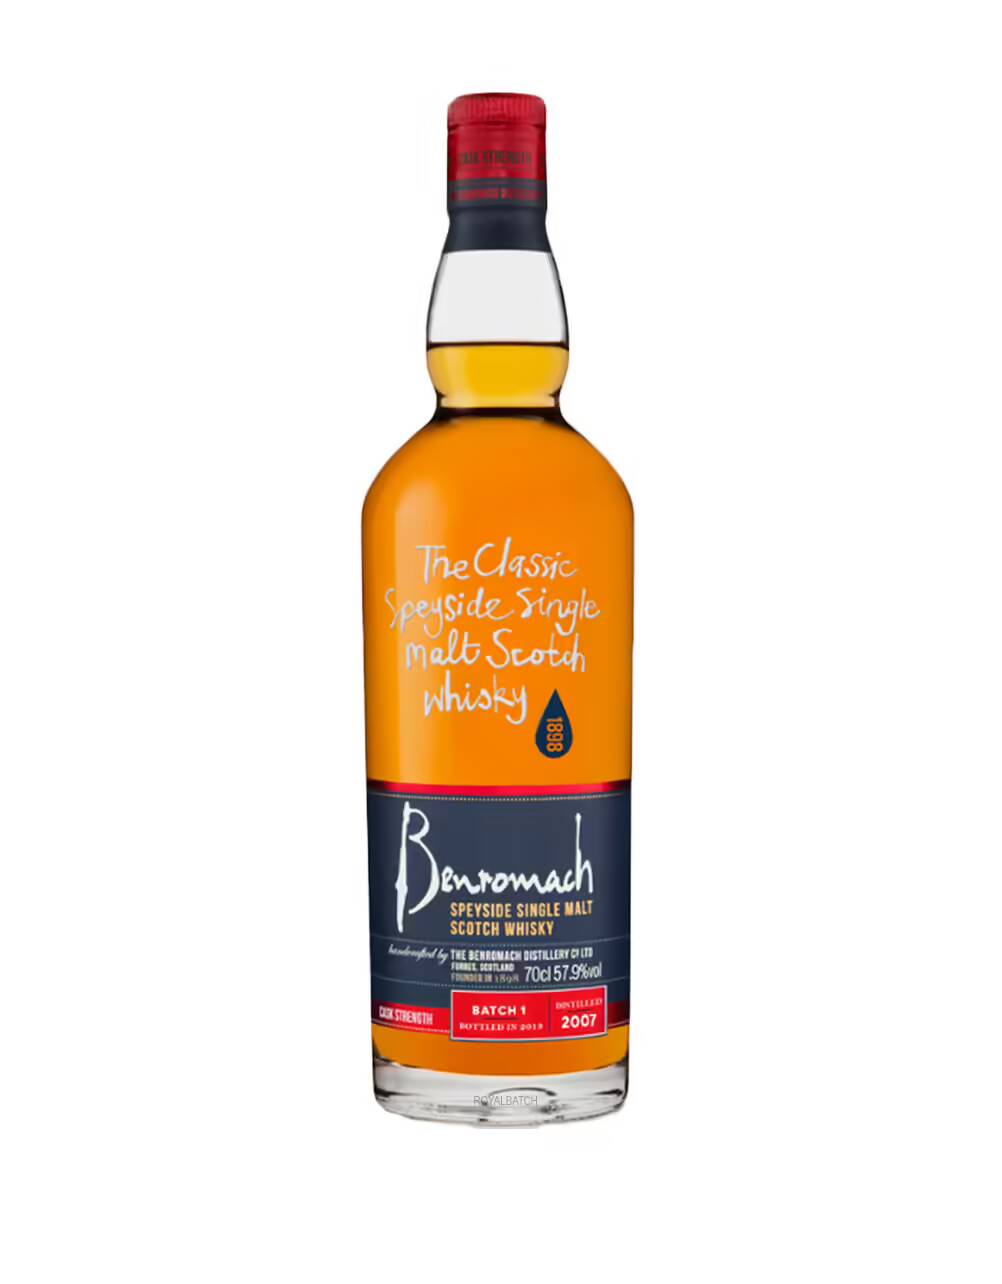 Benromach (Batch 1) 2007 Proof 116.4 Single Malt Scotch whisky